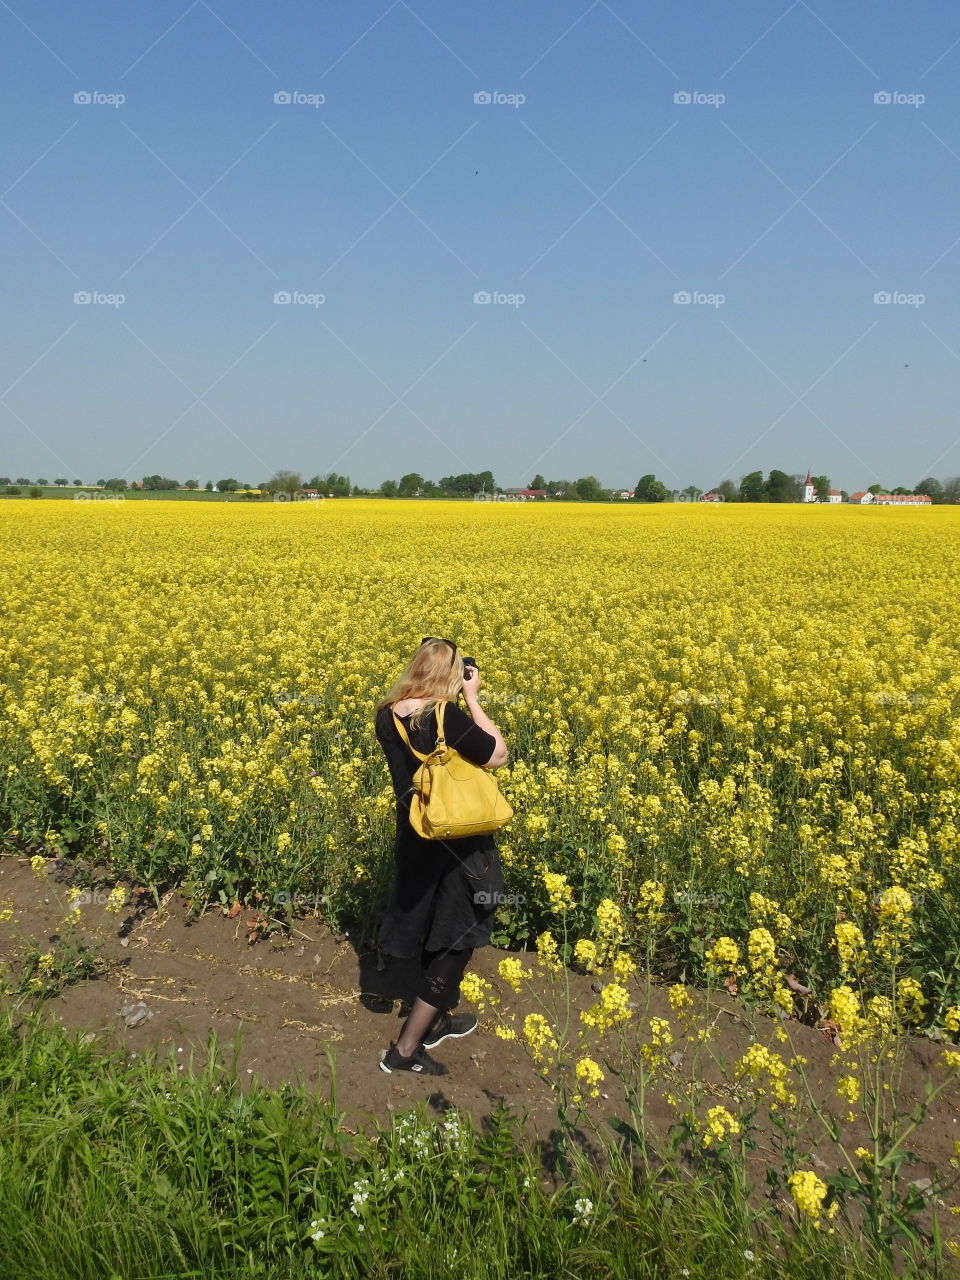 Girl with yellow bag